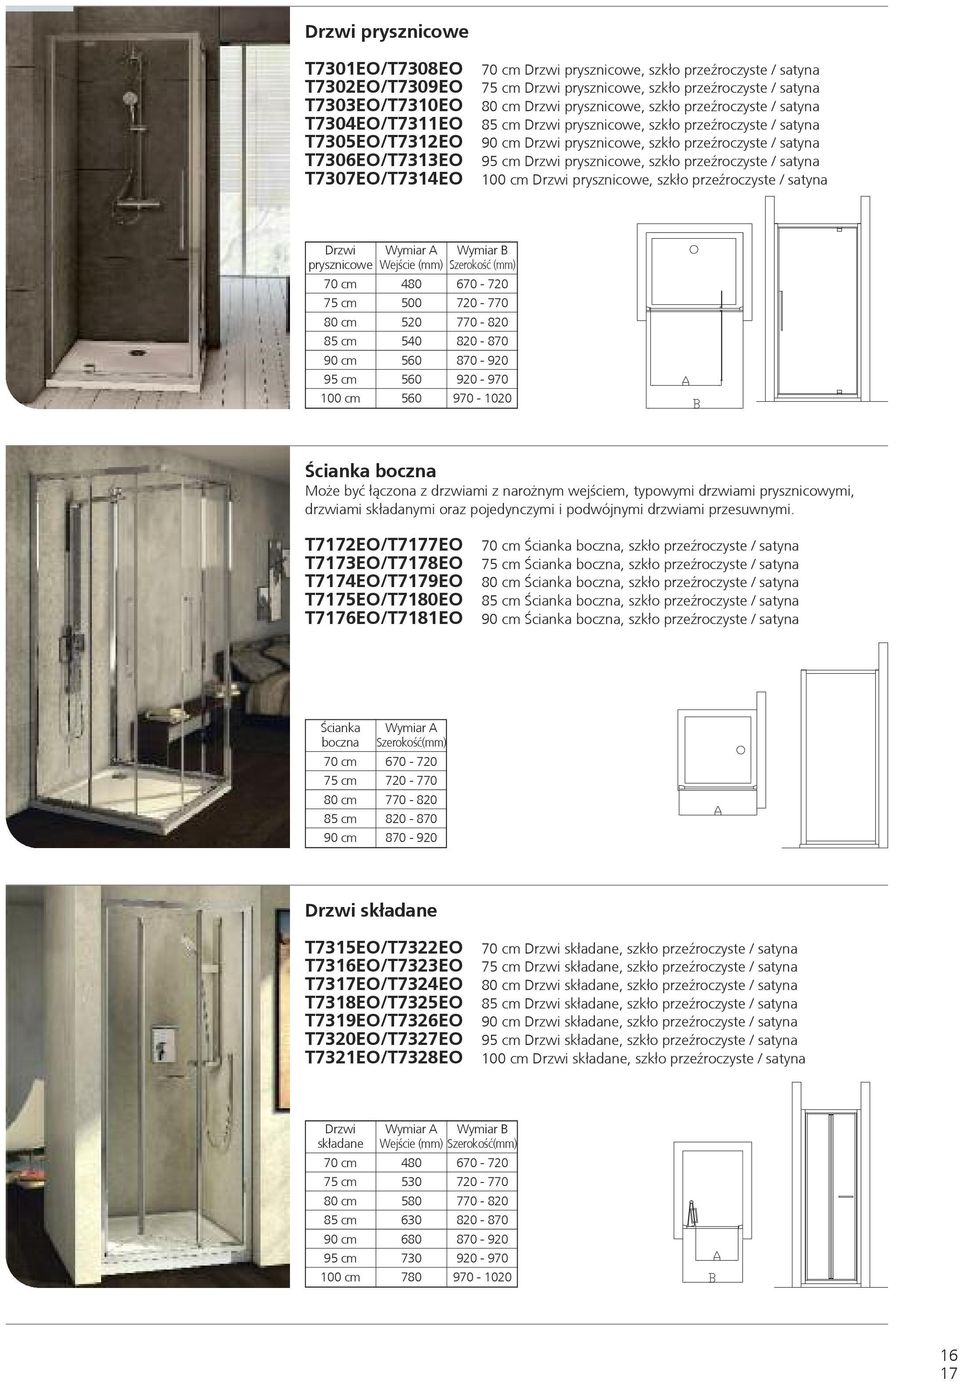 satyna 95 cm Drzwi prysznicowe, szkło przeźroczyste / satyna 100 cm Drzwi prysznicowe, szkło przeźroczyste / satyna Drzwi Wymiar A Wymiar B prysznicowe Wejście (mm) Szerokość (mm) 70 cm 480 670-720